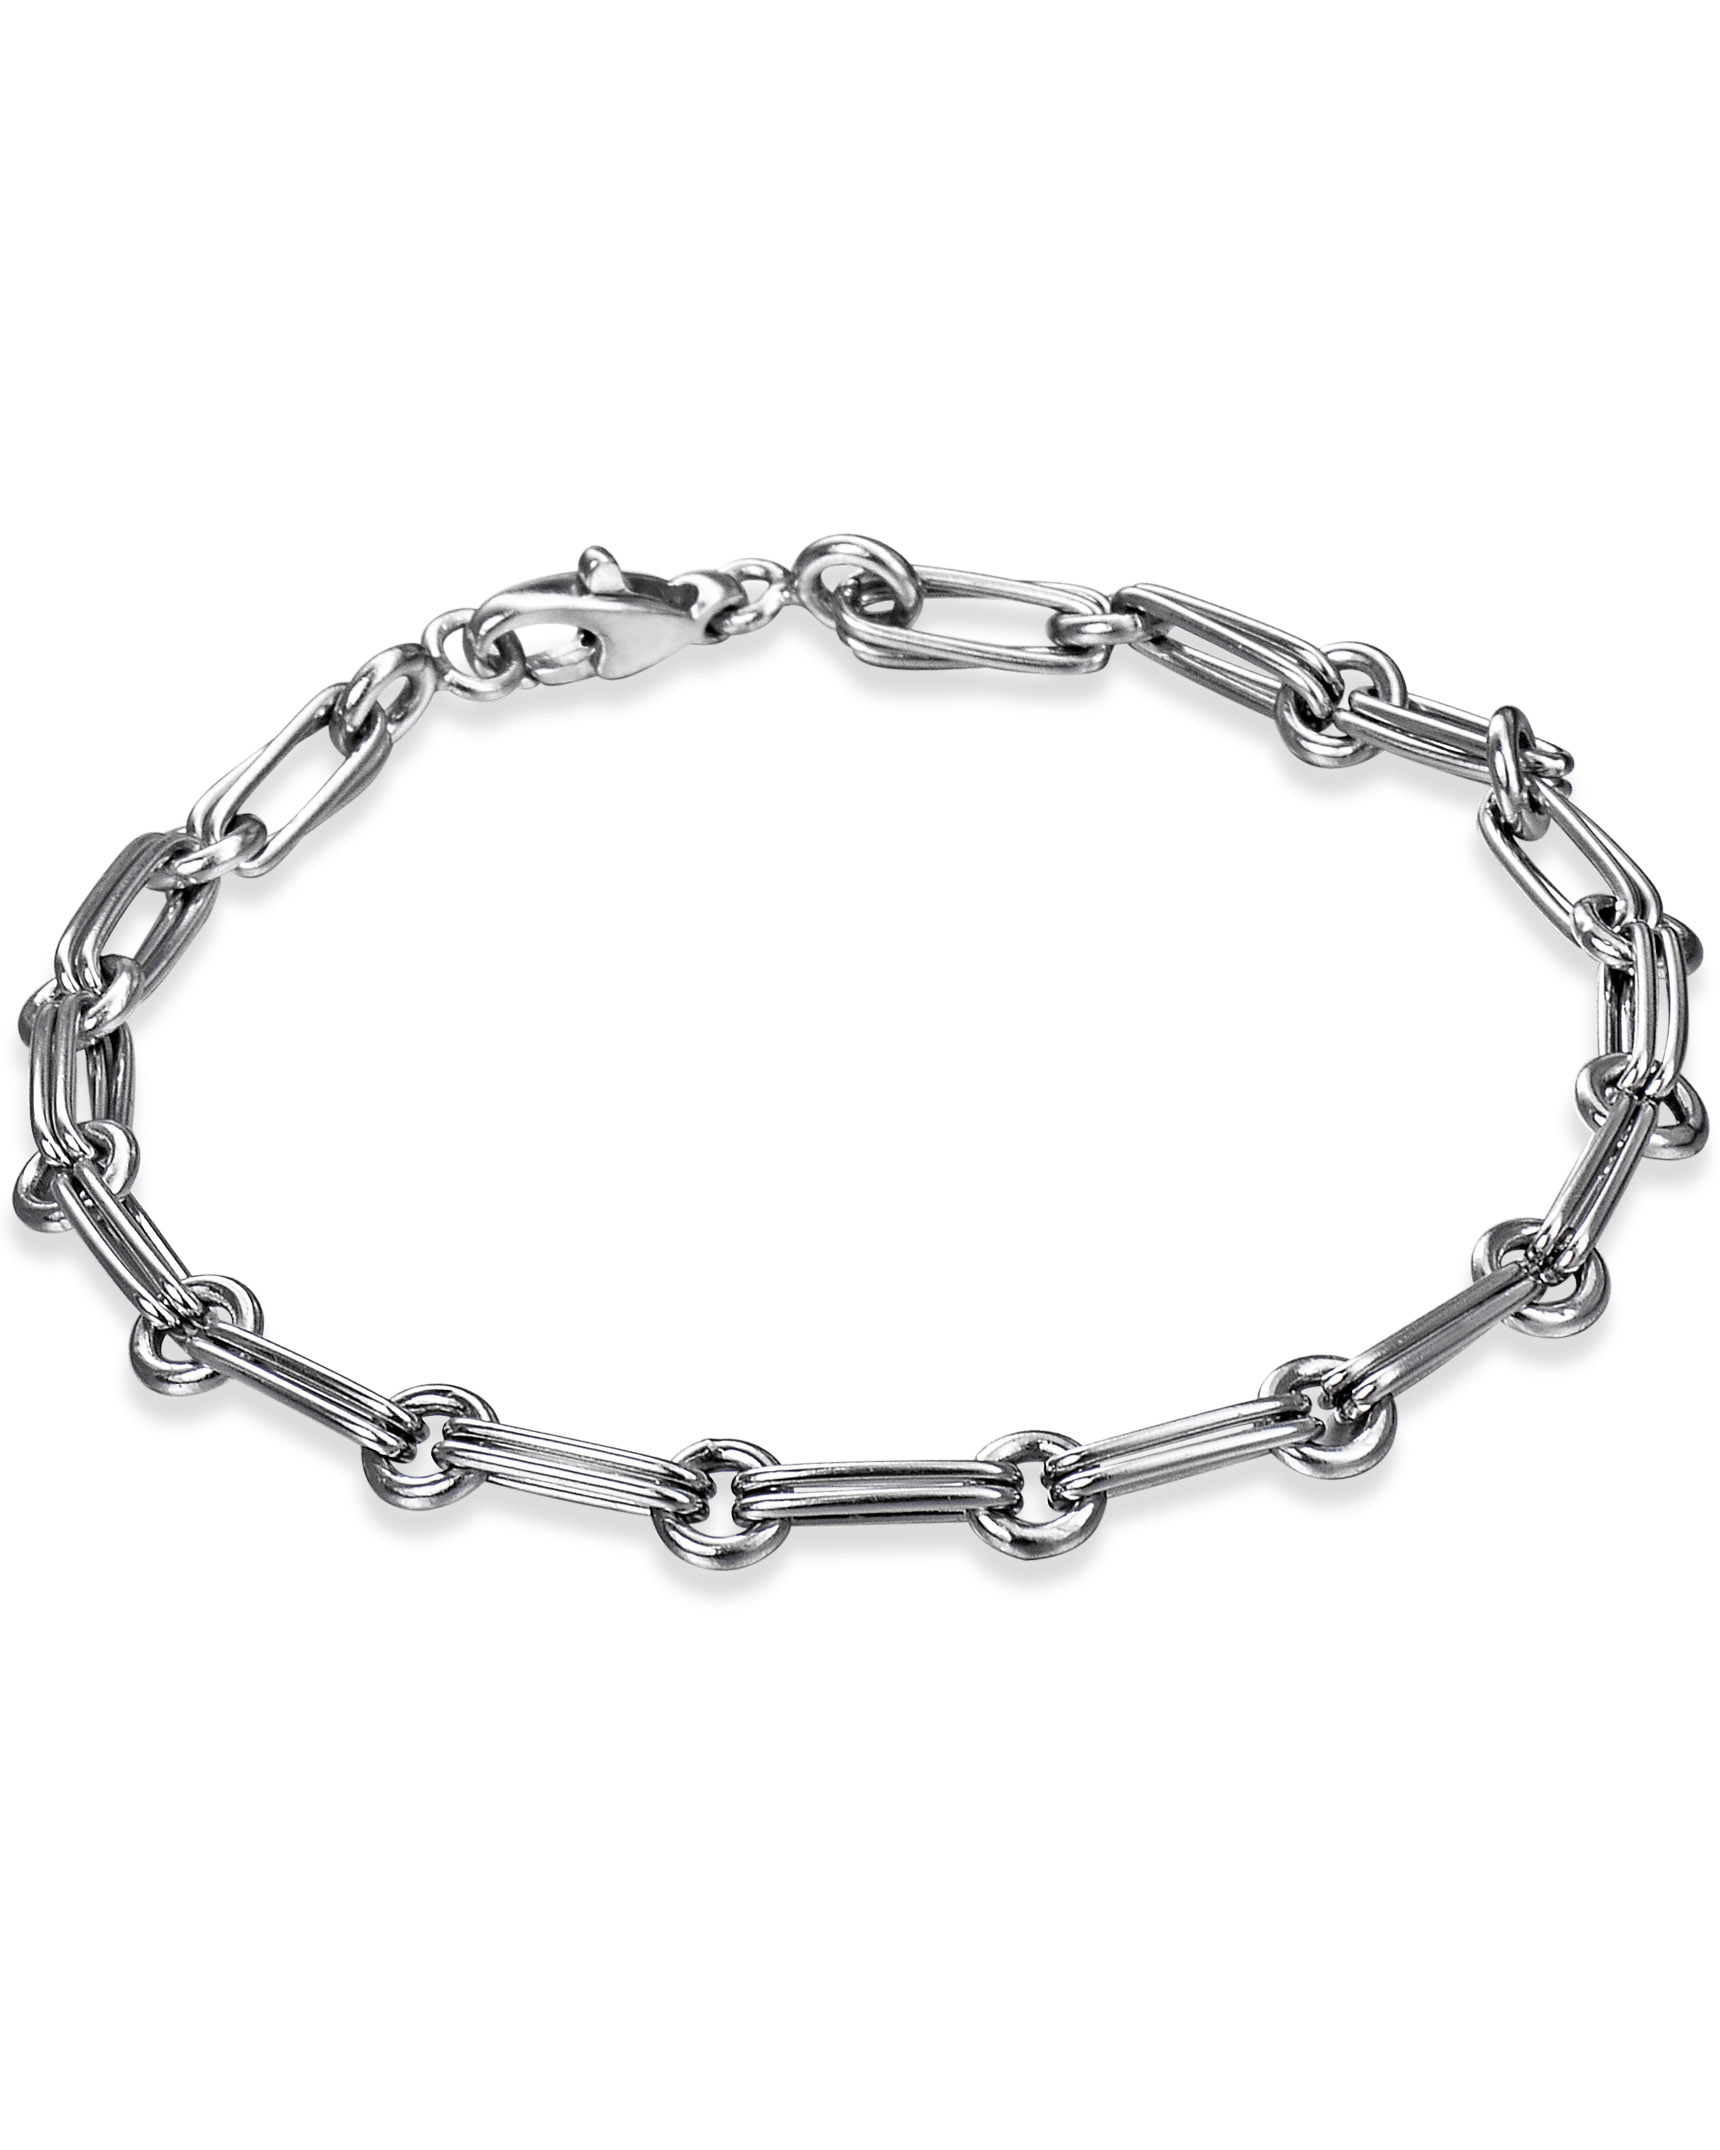 Tutti & Co Daze Double Link Chain Bracelet, Gold at John Lewis & Partners